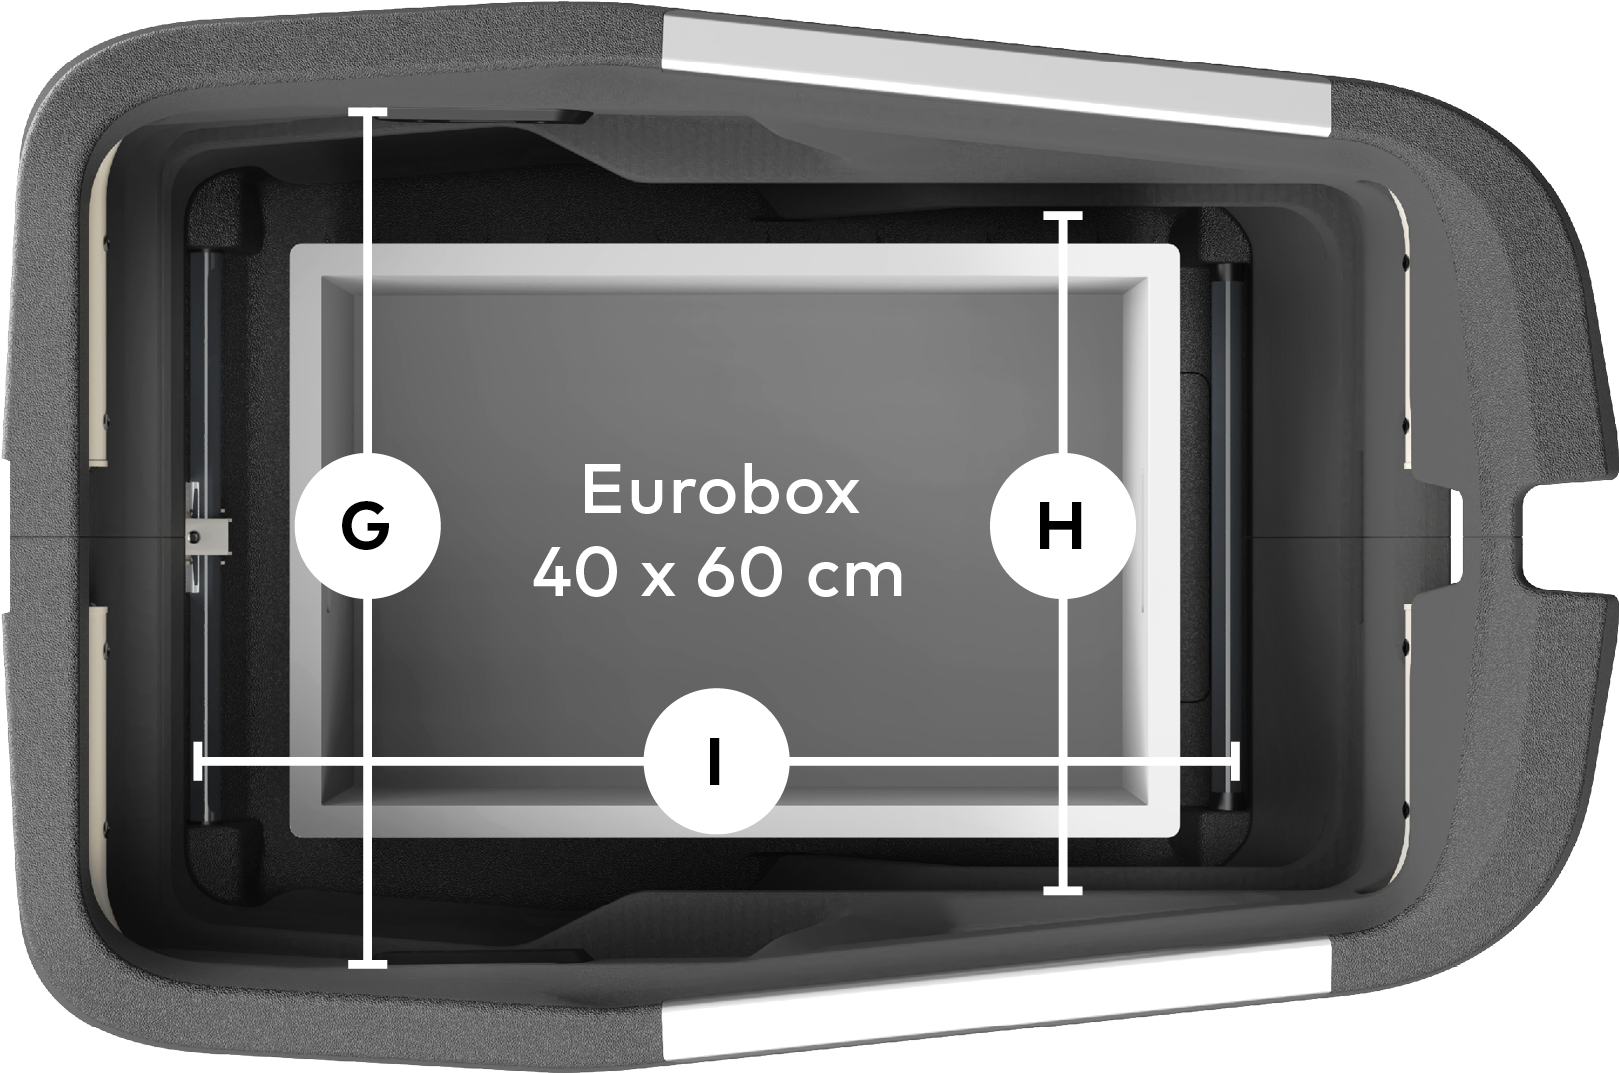 Ansicht von oben auf die Cargobox.
                            Eine 40 &times; 60 cm große Eurobox liegt im Laderaum,
                            darüber sind die Abmessungen des Laderaums eingezeichnet.
                            Breite (vorne): 46 cm;
                            Breite (hinten): 56,5 cm;
                            Länge: 70 cm